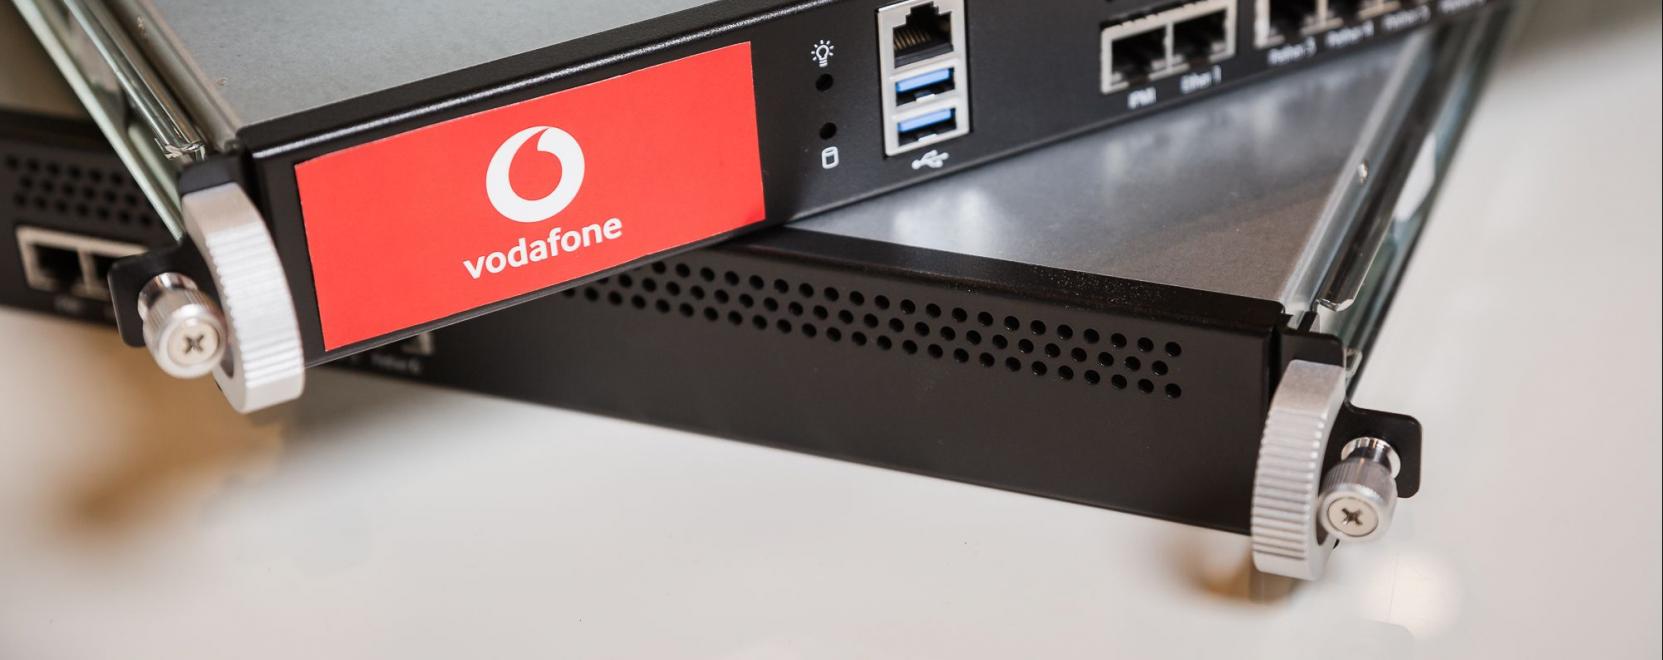 Egyetemi kiberbiztonsági képzést támogat a Vodafone